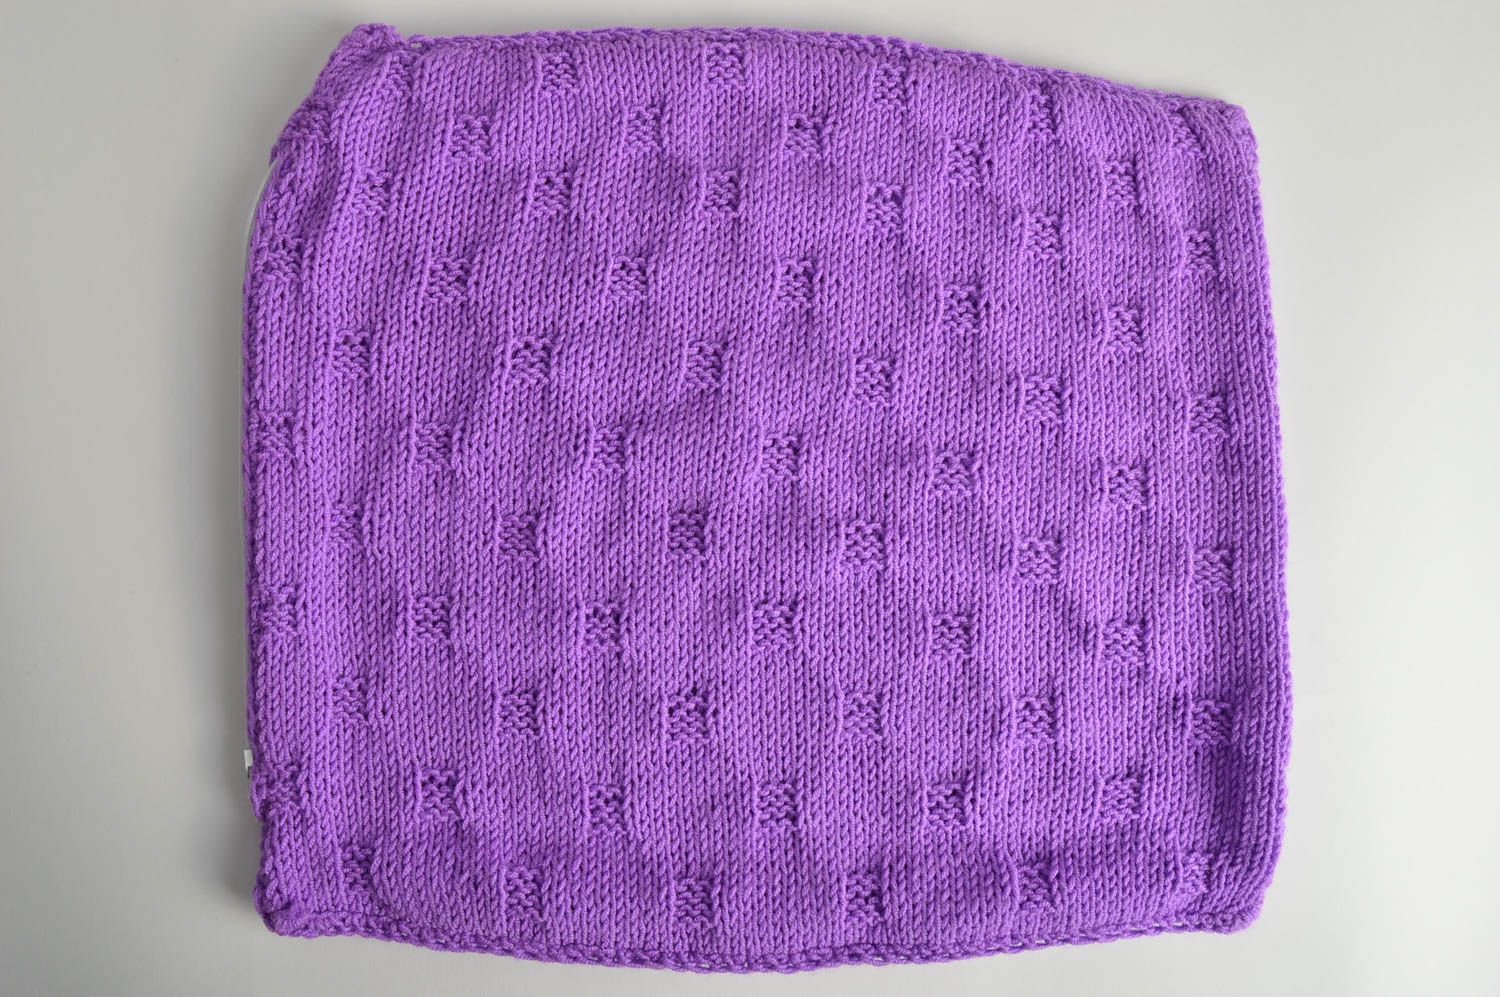 Вязаная наволочка на подушку фиолетовая красивая небольшая стильная хэнд мейд фото 2